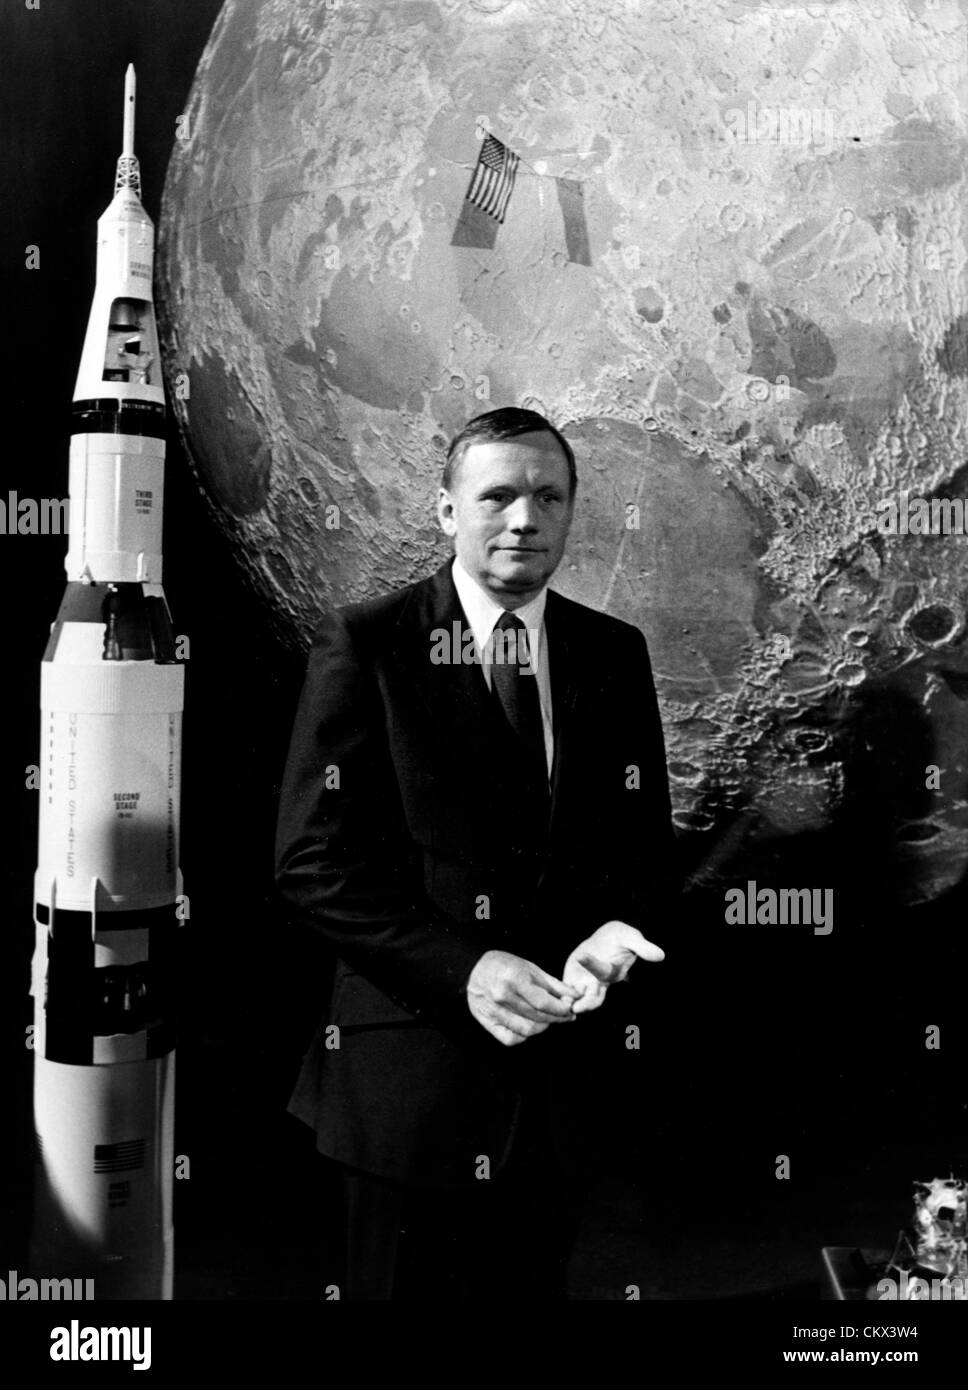 Juillet 21, 1979 - Paris, France - le premier homme sur la lune, Neil Armstrong a été de répondre à toutes les questions de l'auditoire de l'émission "Les dossiers de l'ecran' (le fichier de l'écran) pour célébrer le 10e anniversaire de la conquête de la lune (20 juillet 1969). La photo montre Neil pendant le spectacle est Paris. (Crédit Image : © Keystone Photos USA/ZUMAPRESS.com) Banque D'Images